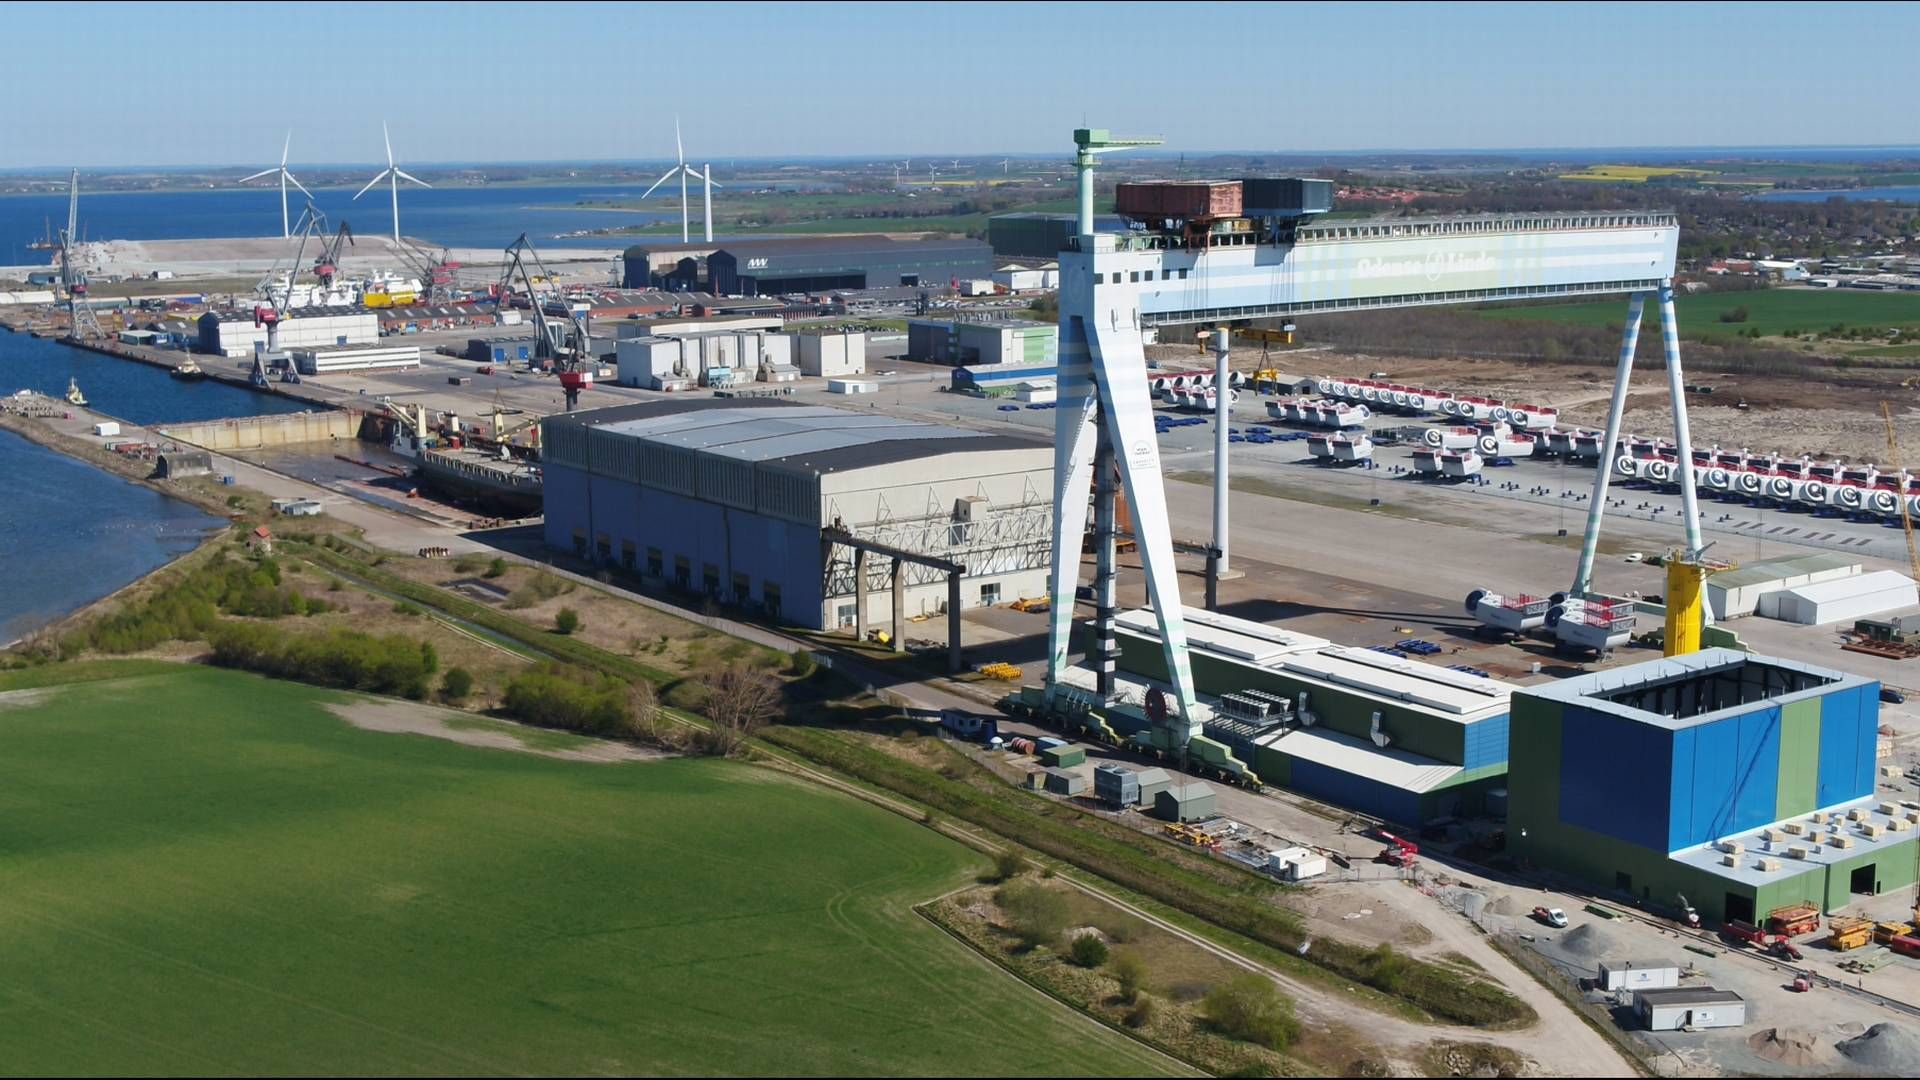 STADIG STØRRE: Lindø Offshore Renewables Centre hører fortsatt fra markedet at det er behov for større testkapasitet til tross for europeiske turbinprodusenters bønn om å stoppe kappløpet mot større turbiner. | Foto: Lindø Port of Odense